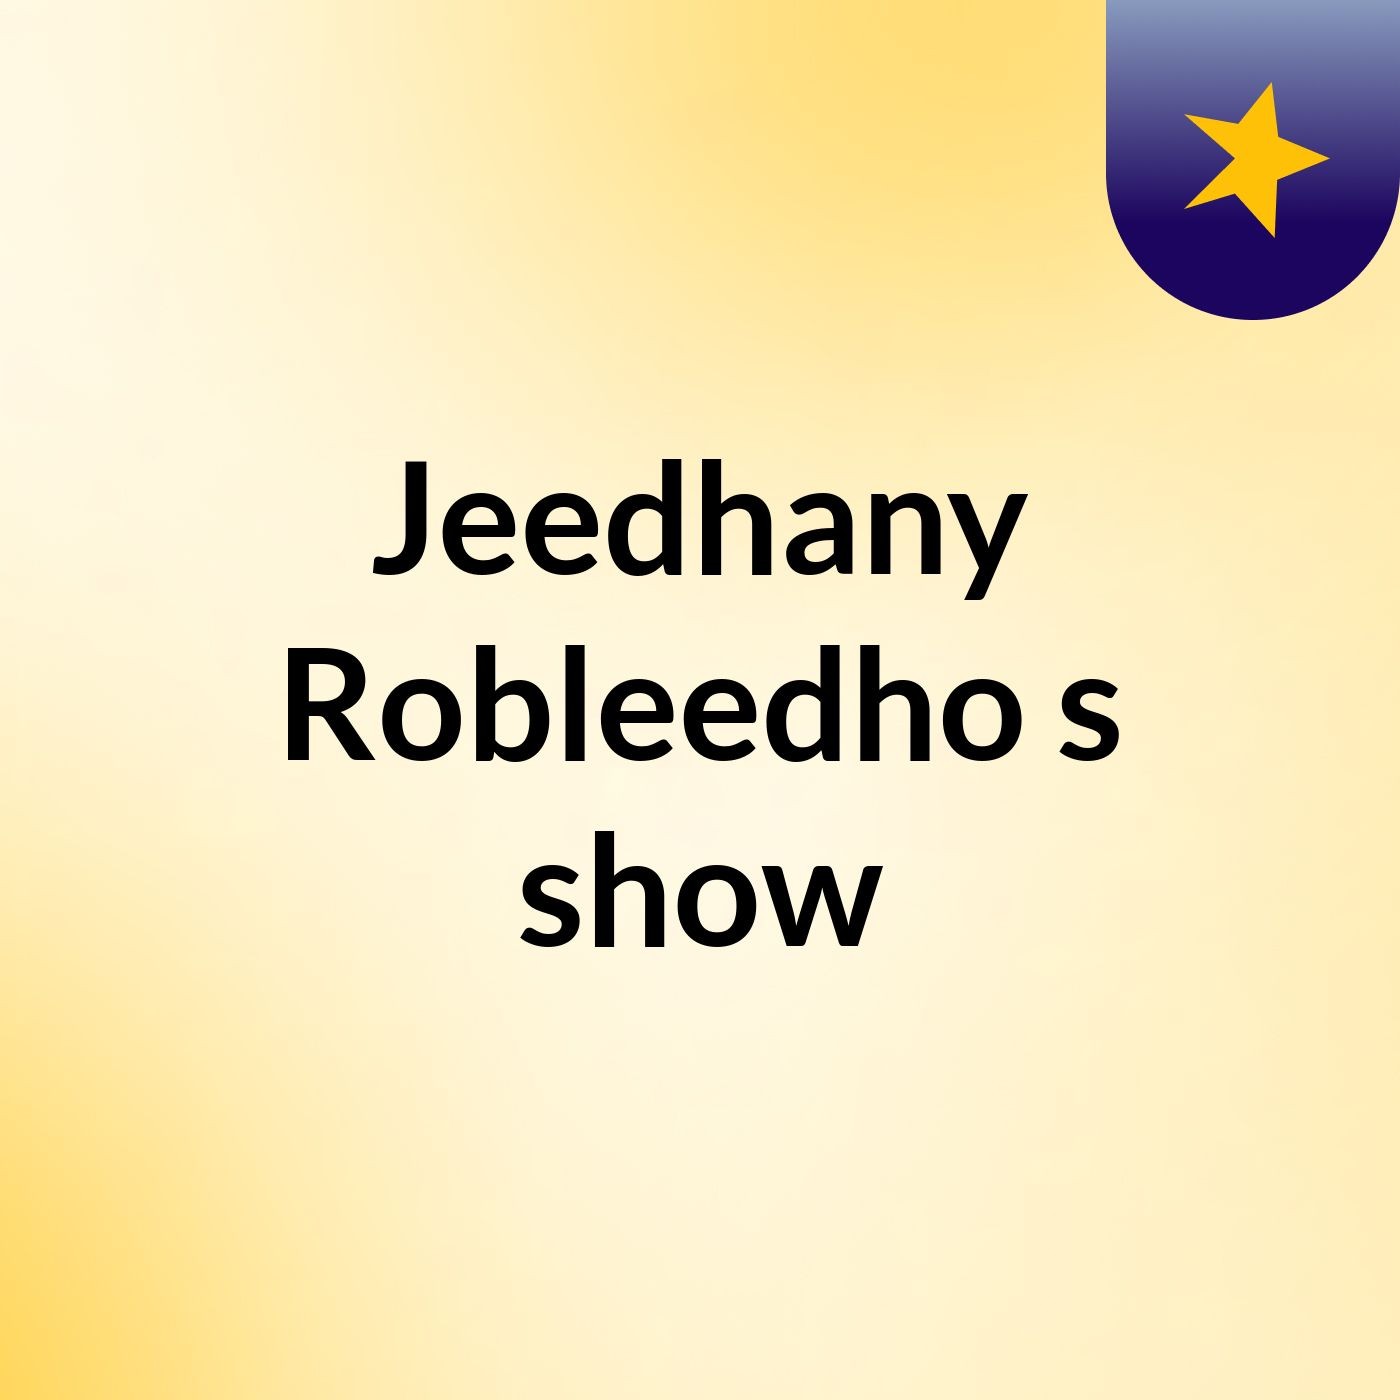 Jeedhany Robleedho's show